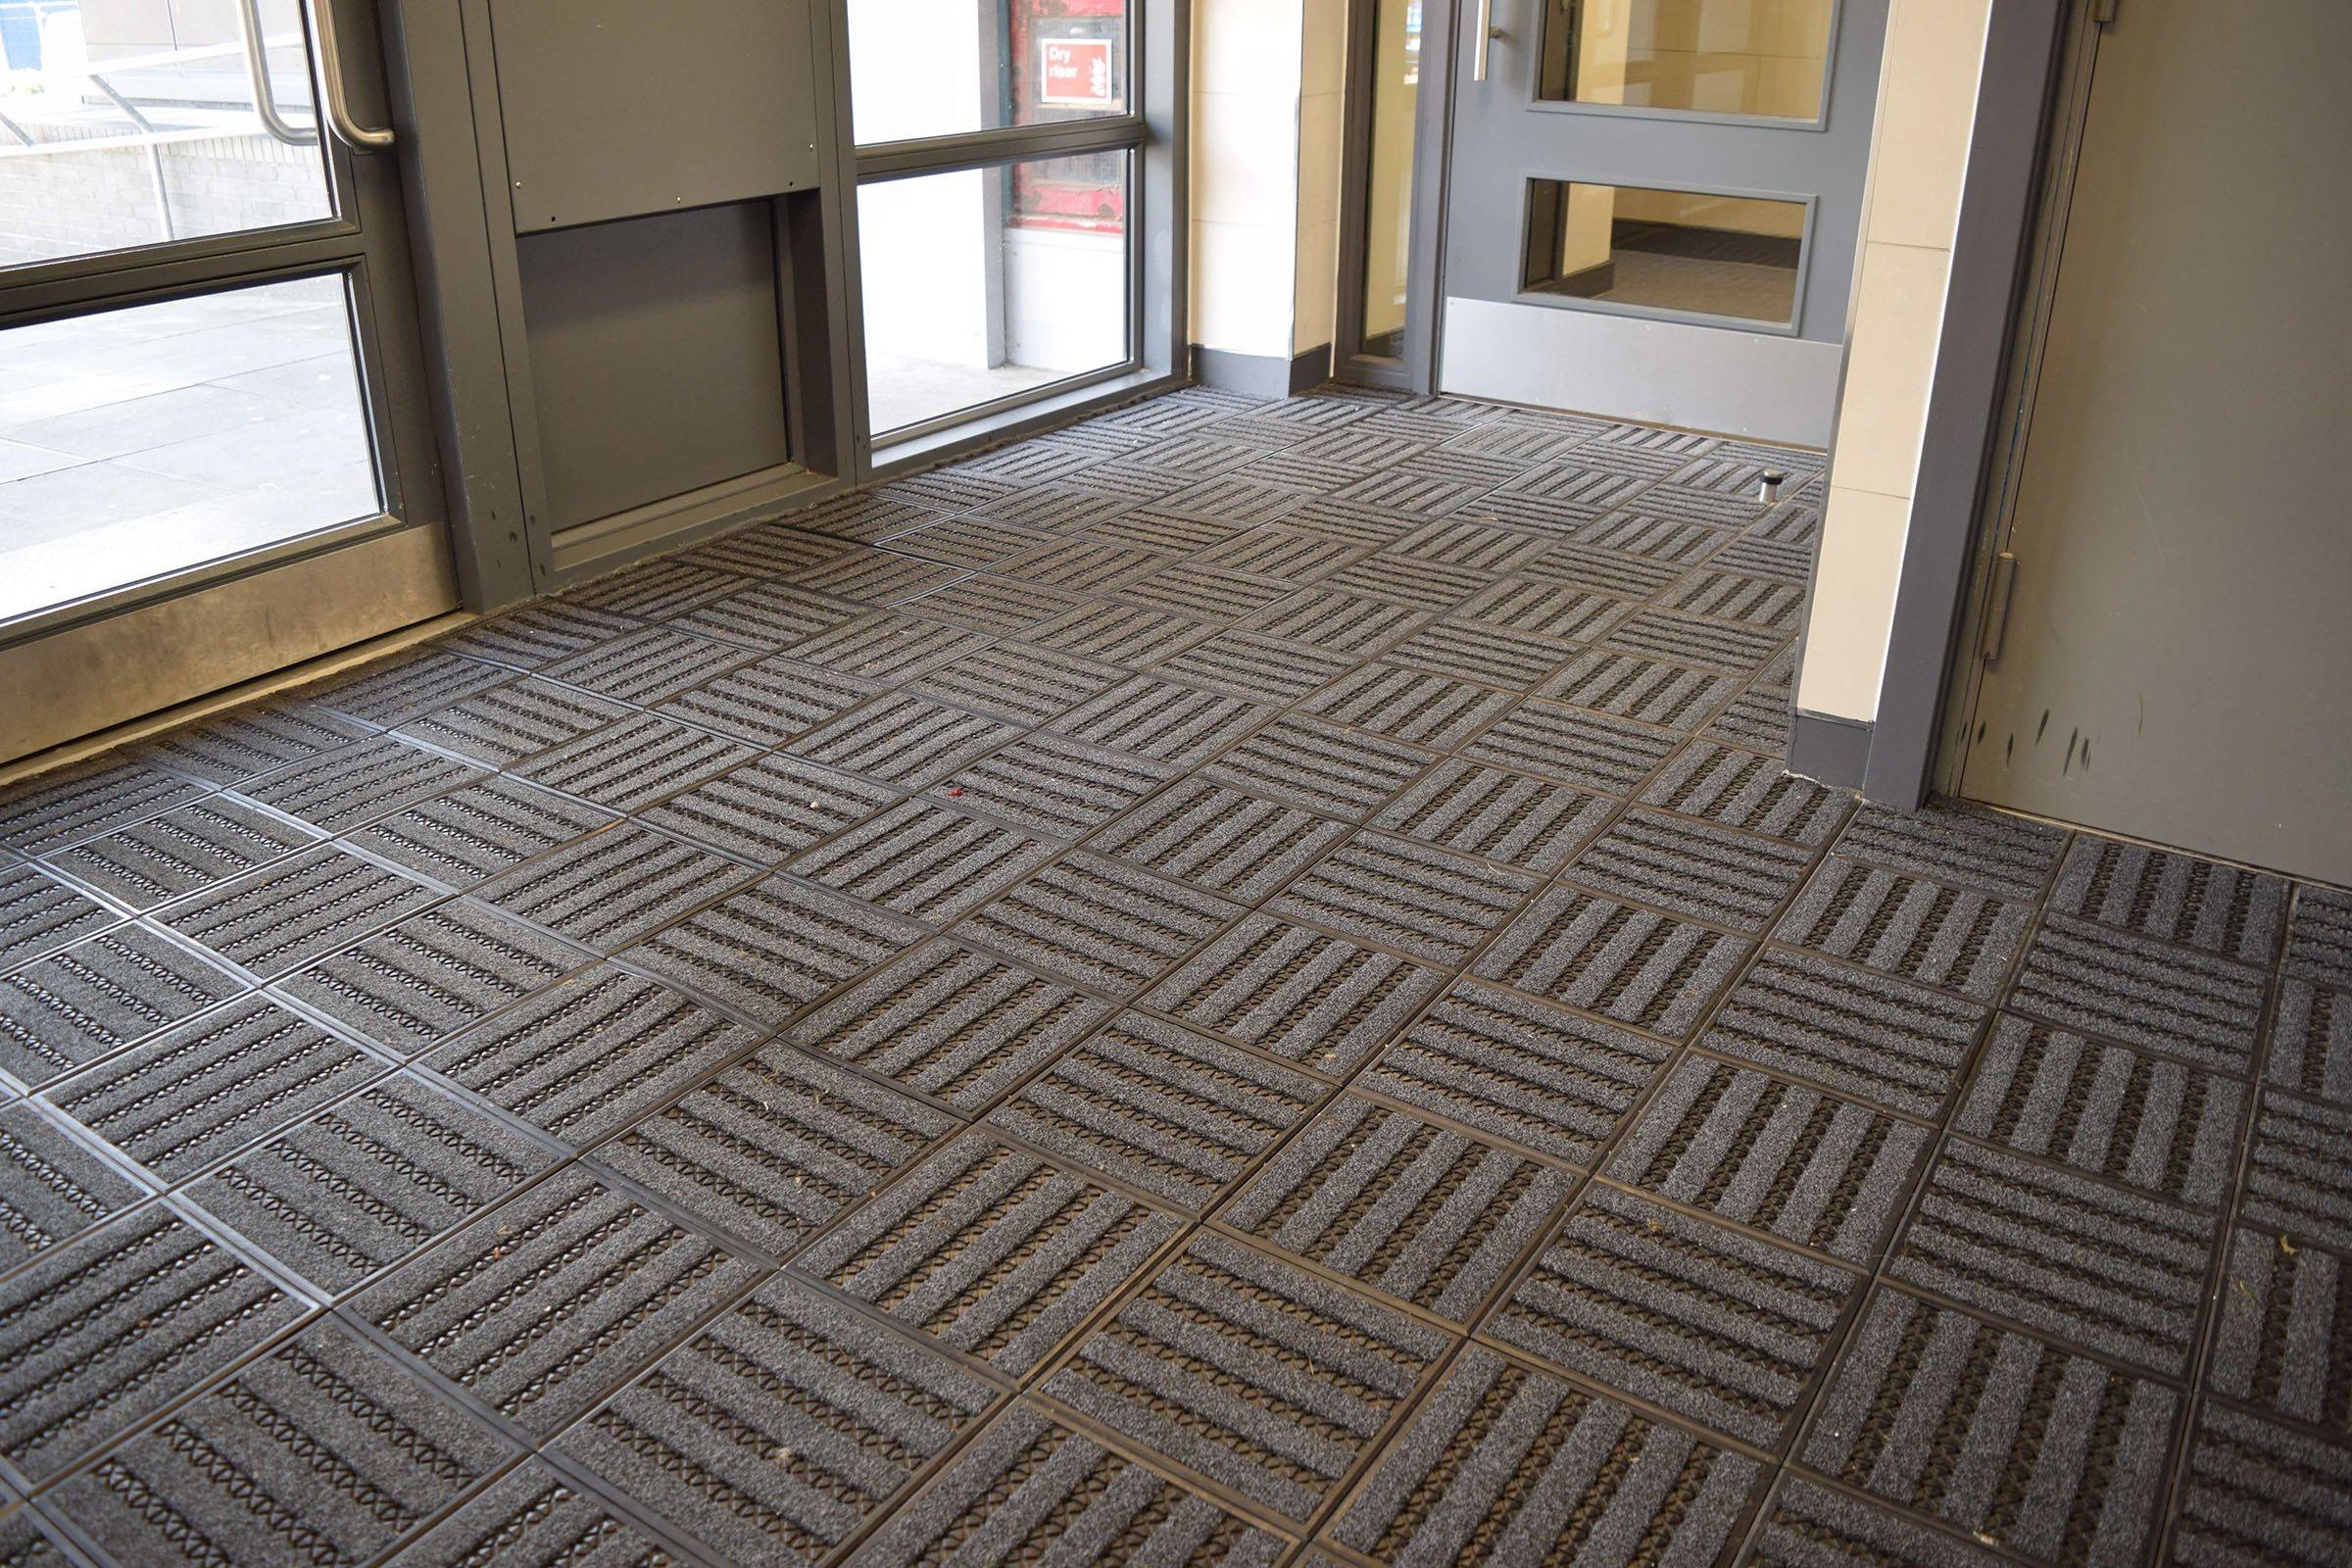 Paragon Treadloc 25 Carpet Tile Premier Mercury